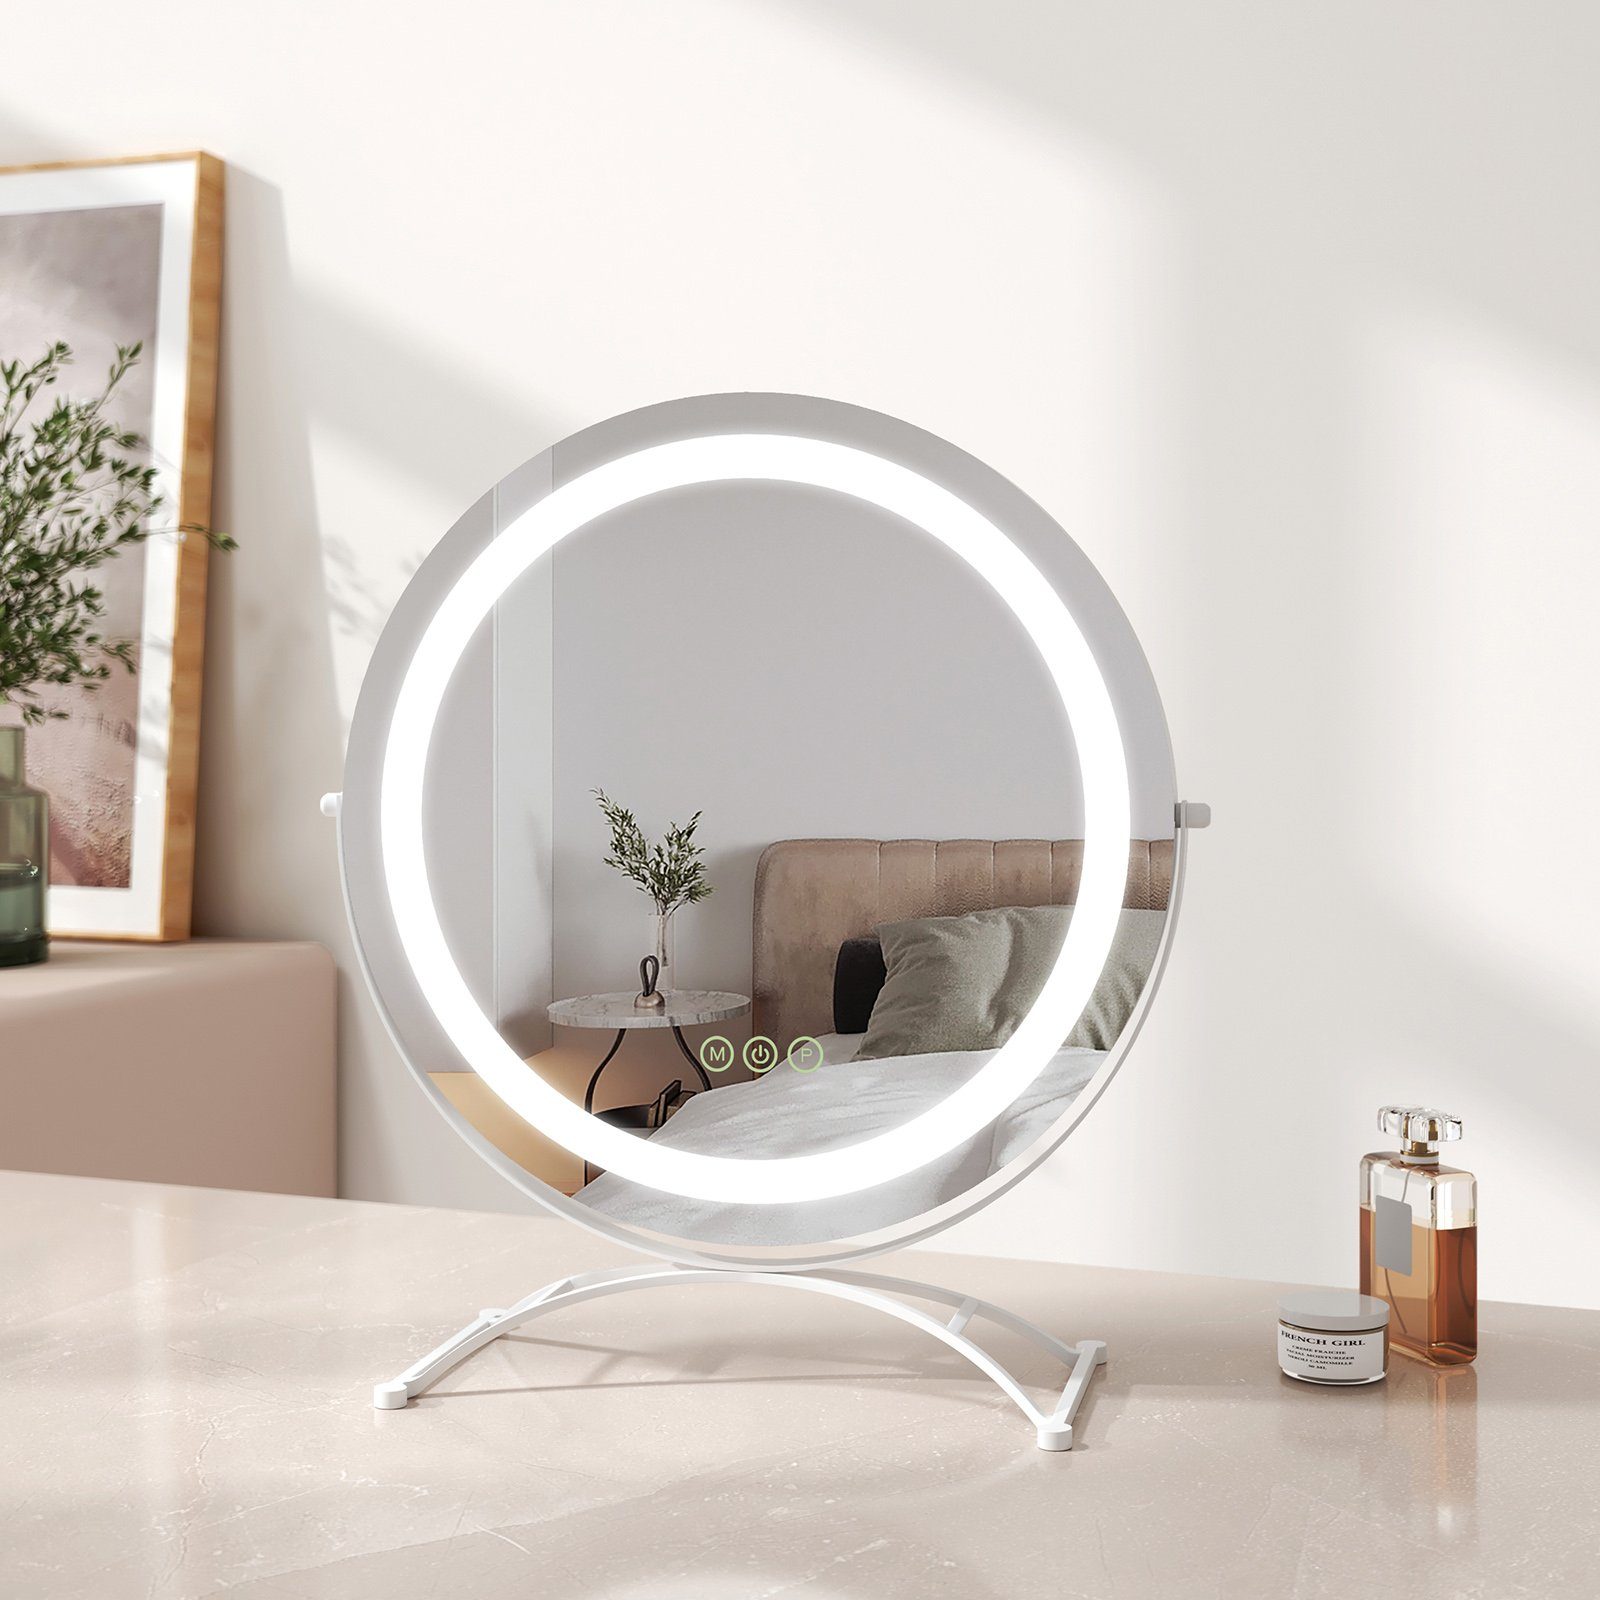 EMKE Schminkspiegel Schminkspiegel LED Runder Kosmetikspiegel Tischspiegel mit Beleuchtung, mit Touch, 3 Lichtfarben Dimmbar, Memory-Funktion, 360° Drehbar Weiß | Schminkspiegel